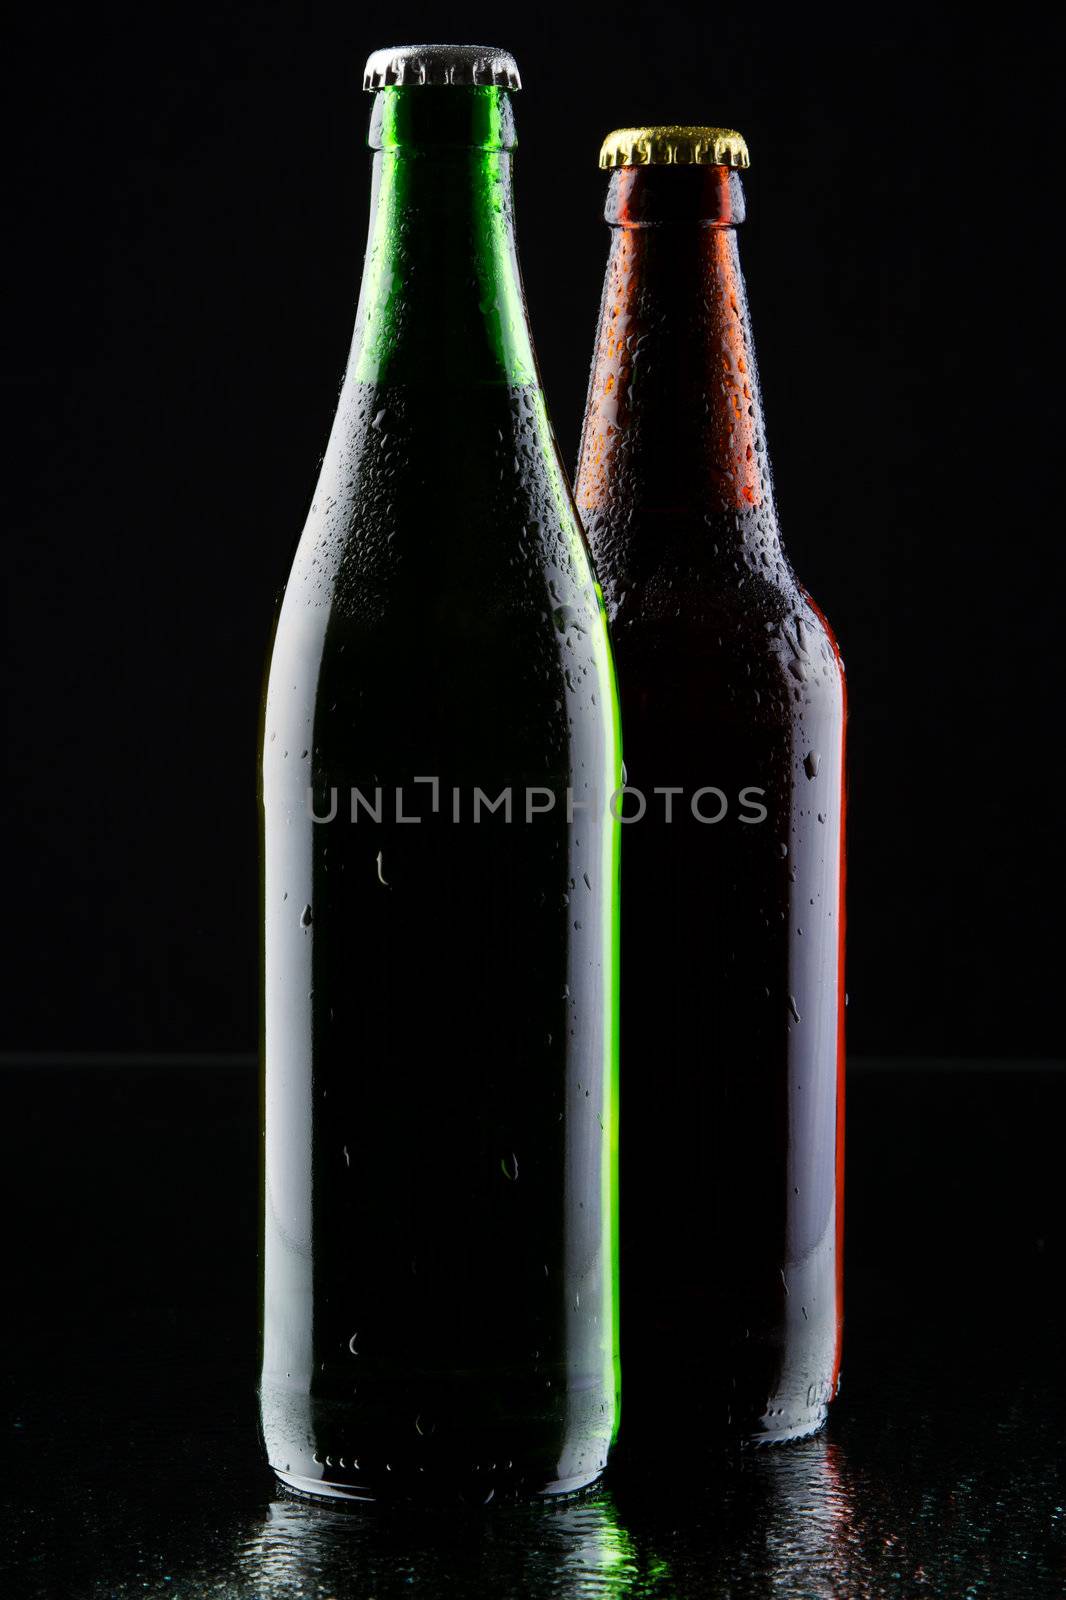 Two beer bottles silhouette by Gdolgikh